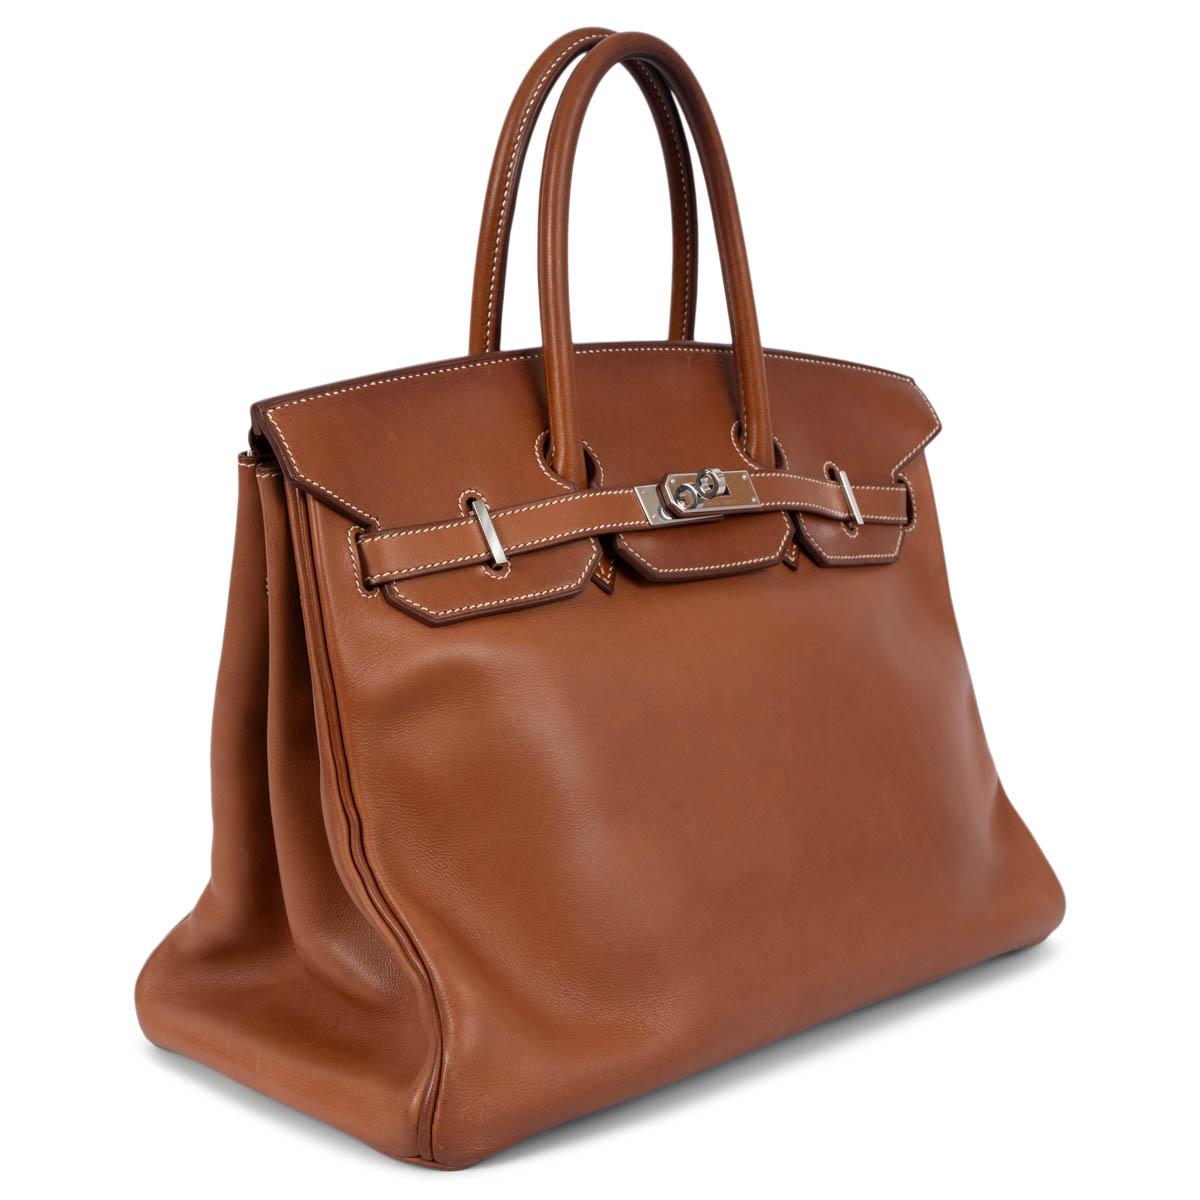 100% authentische Hermès Birkin 35 Tasche in Fauve (cognacbraun) Veau Barenia Leder mit Palladium Hardware. Gefüttert mit Chevre (Ziegenleder), mit einer offenen Tasche auf der Vorderseite und einer Reißverschlusstasche auf der Rückseite. Wurde